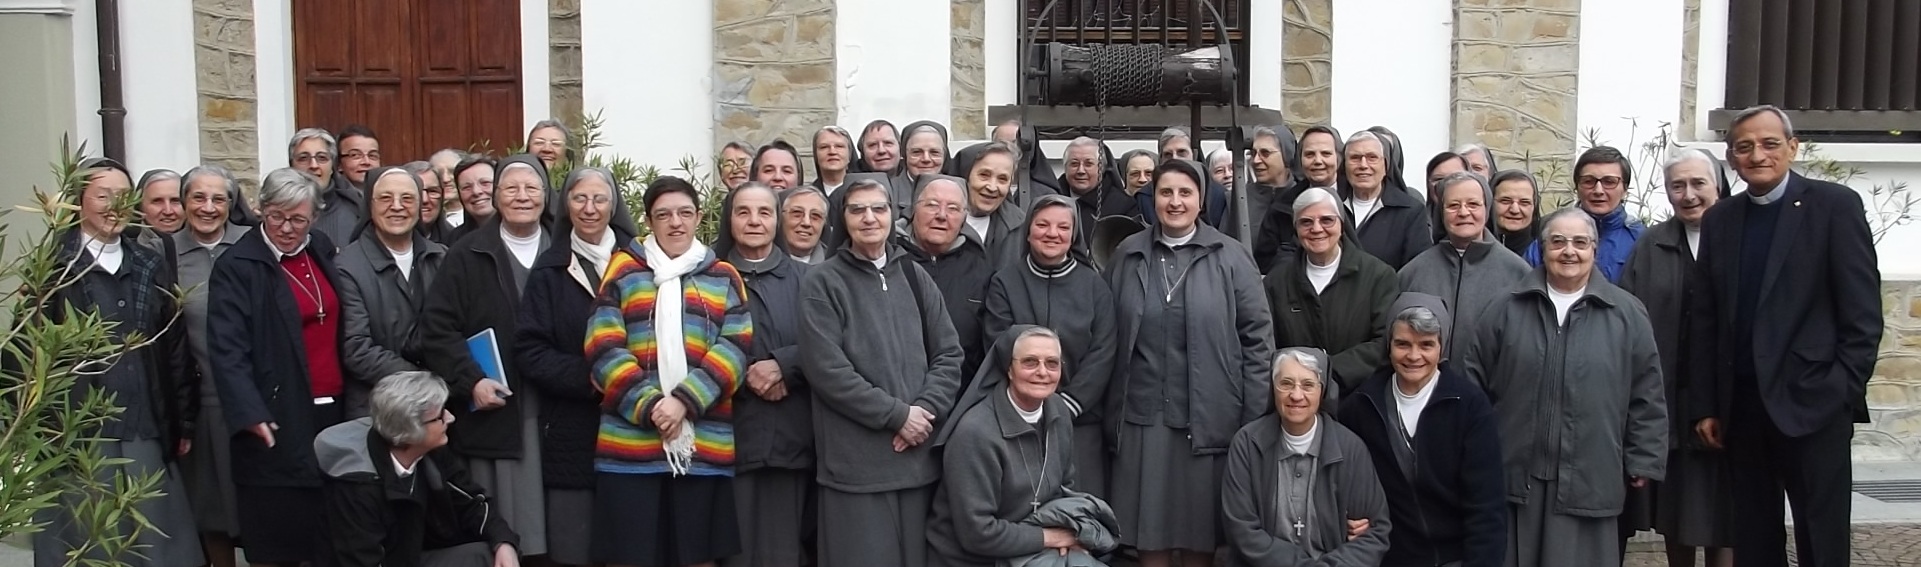 Esercizi spirituali a Mornese per le Direttrici di Piemonte, Valle d’Aosta e Lombardia